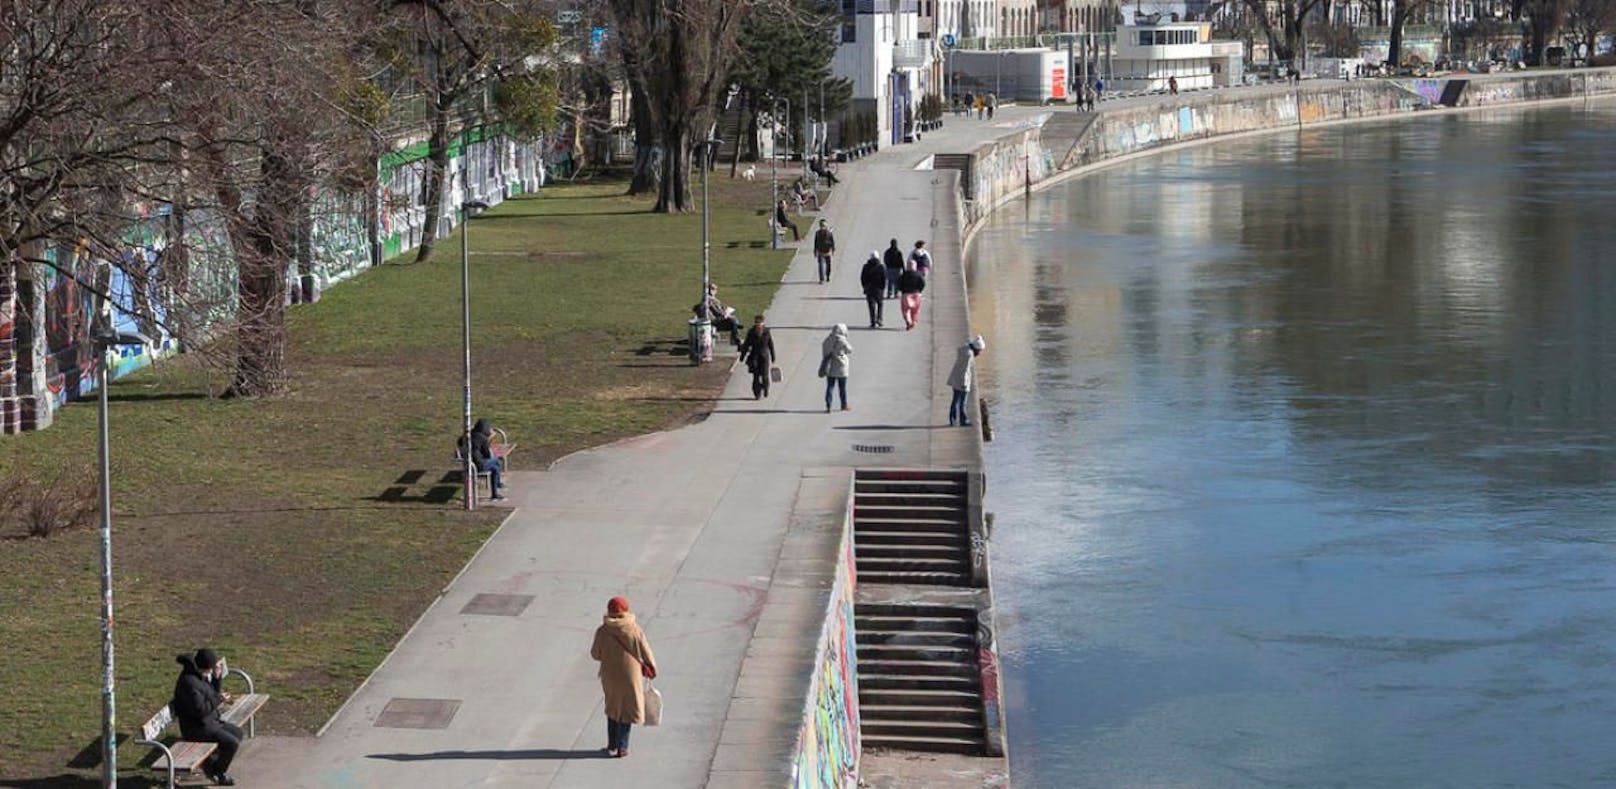 Eine ältere Frau ist am Sonntagmorgen in den Donaukanal gestürzt - sie schwebt in Lebensgefahr.